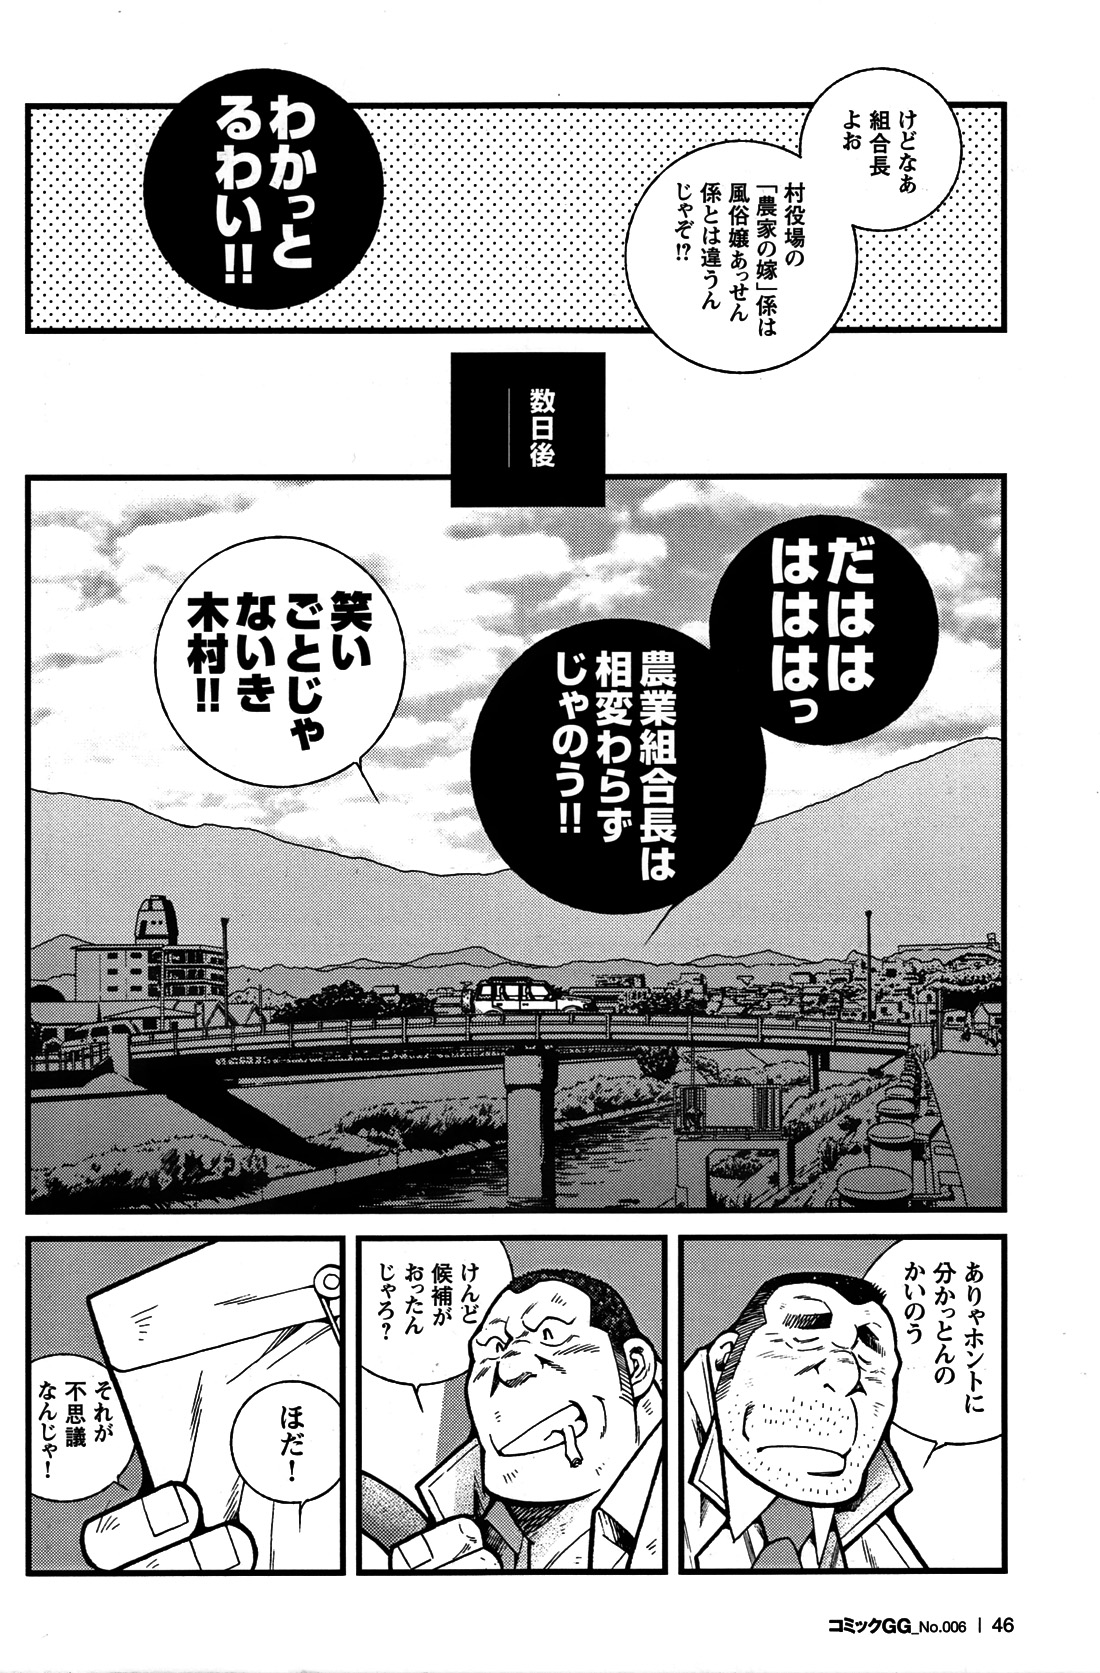 Comic G-men Gaho No. 06 Nikutai Roudousha page 41 full